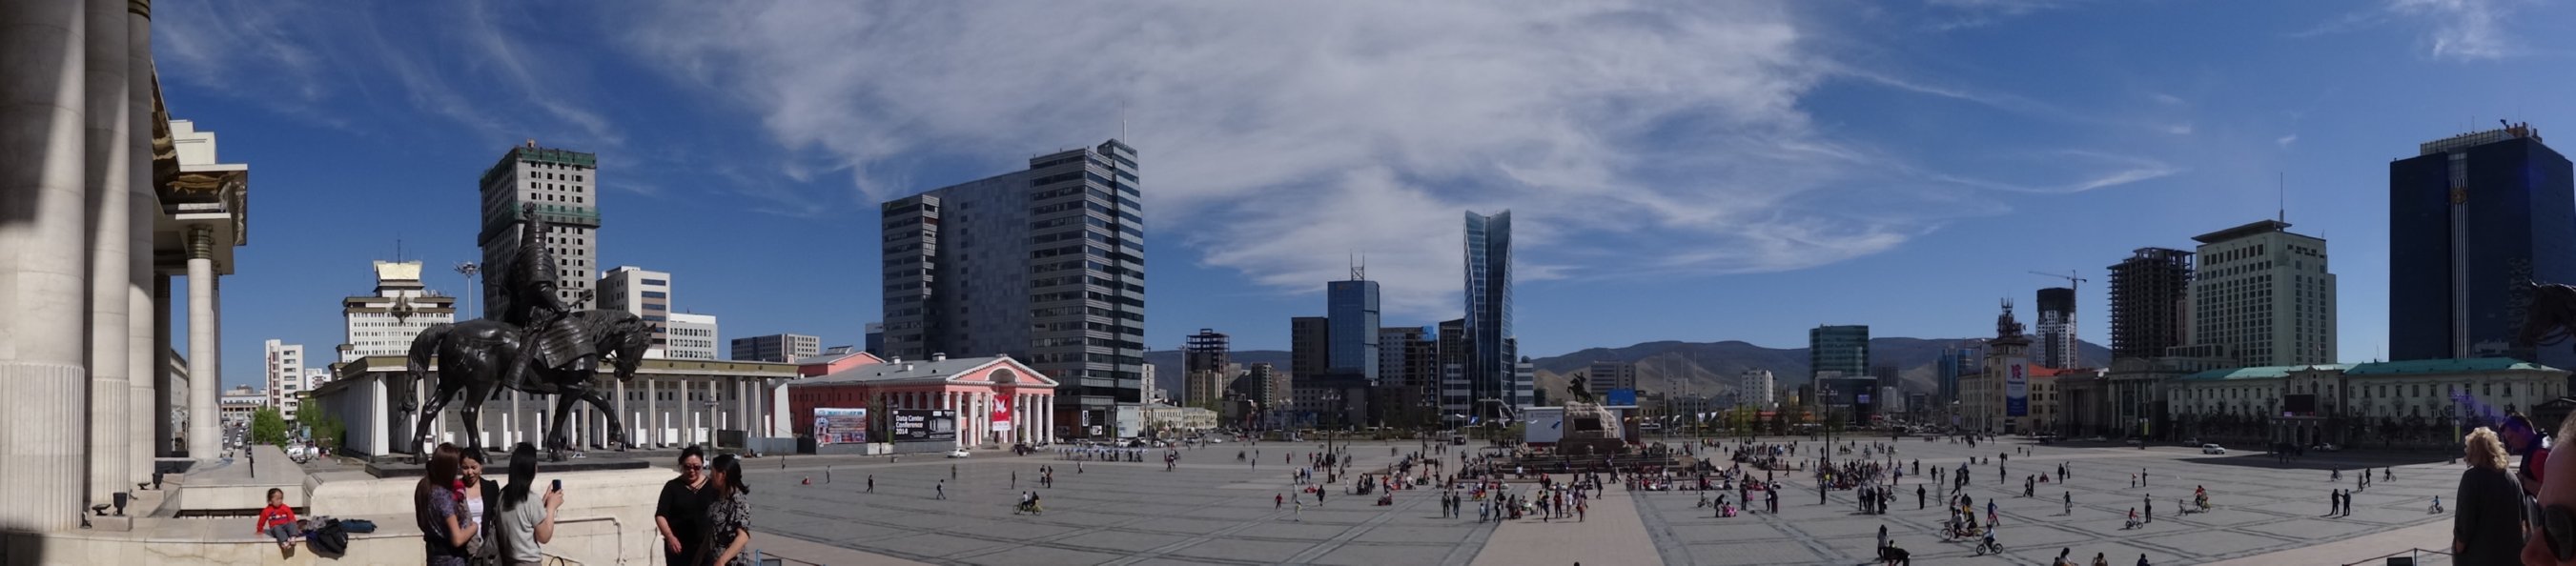 Ulaanbaatar - Sükhbaatar square